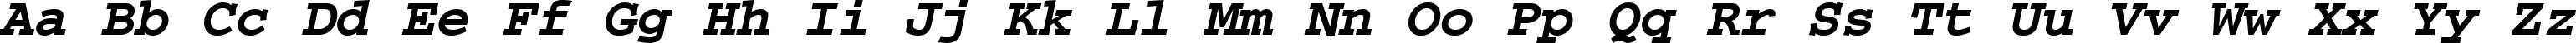 Пример написания английского алфавита шрифтом CourierPS Bold Oblique